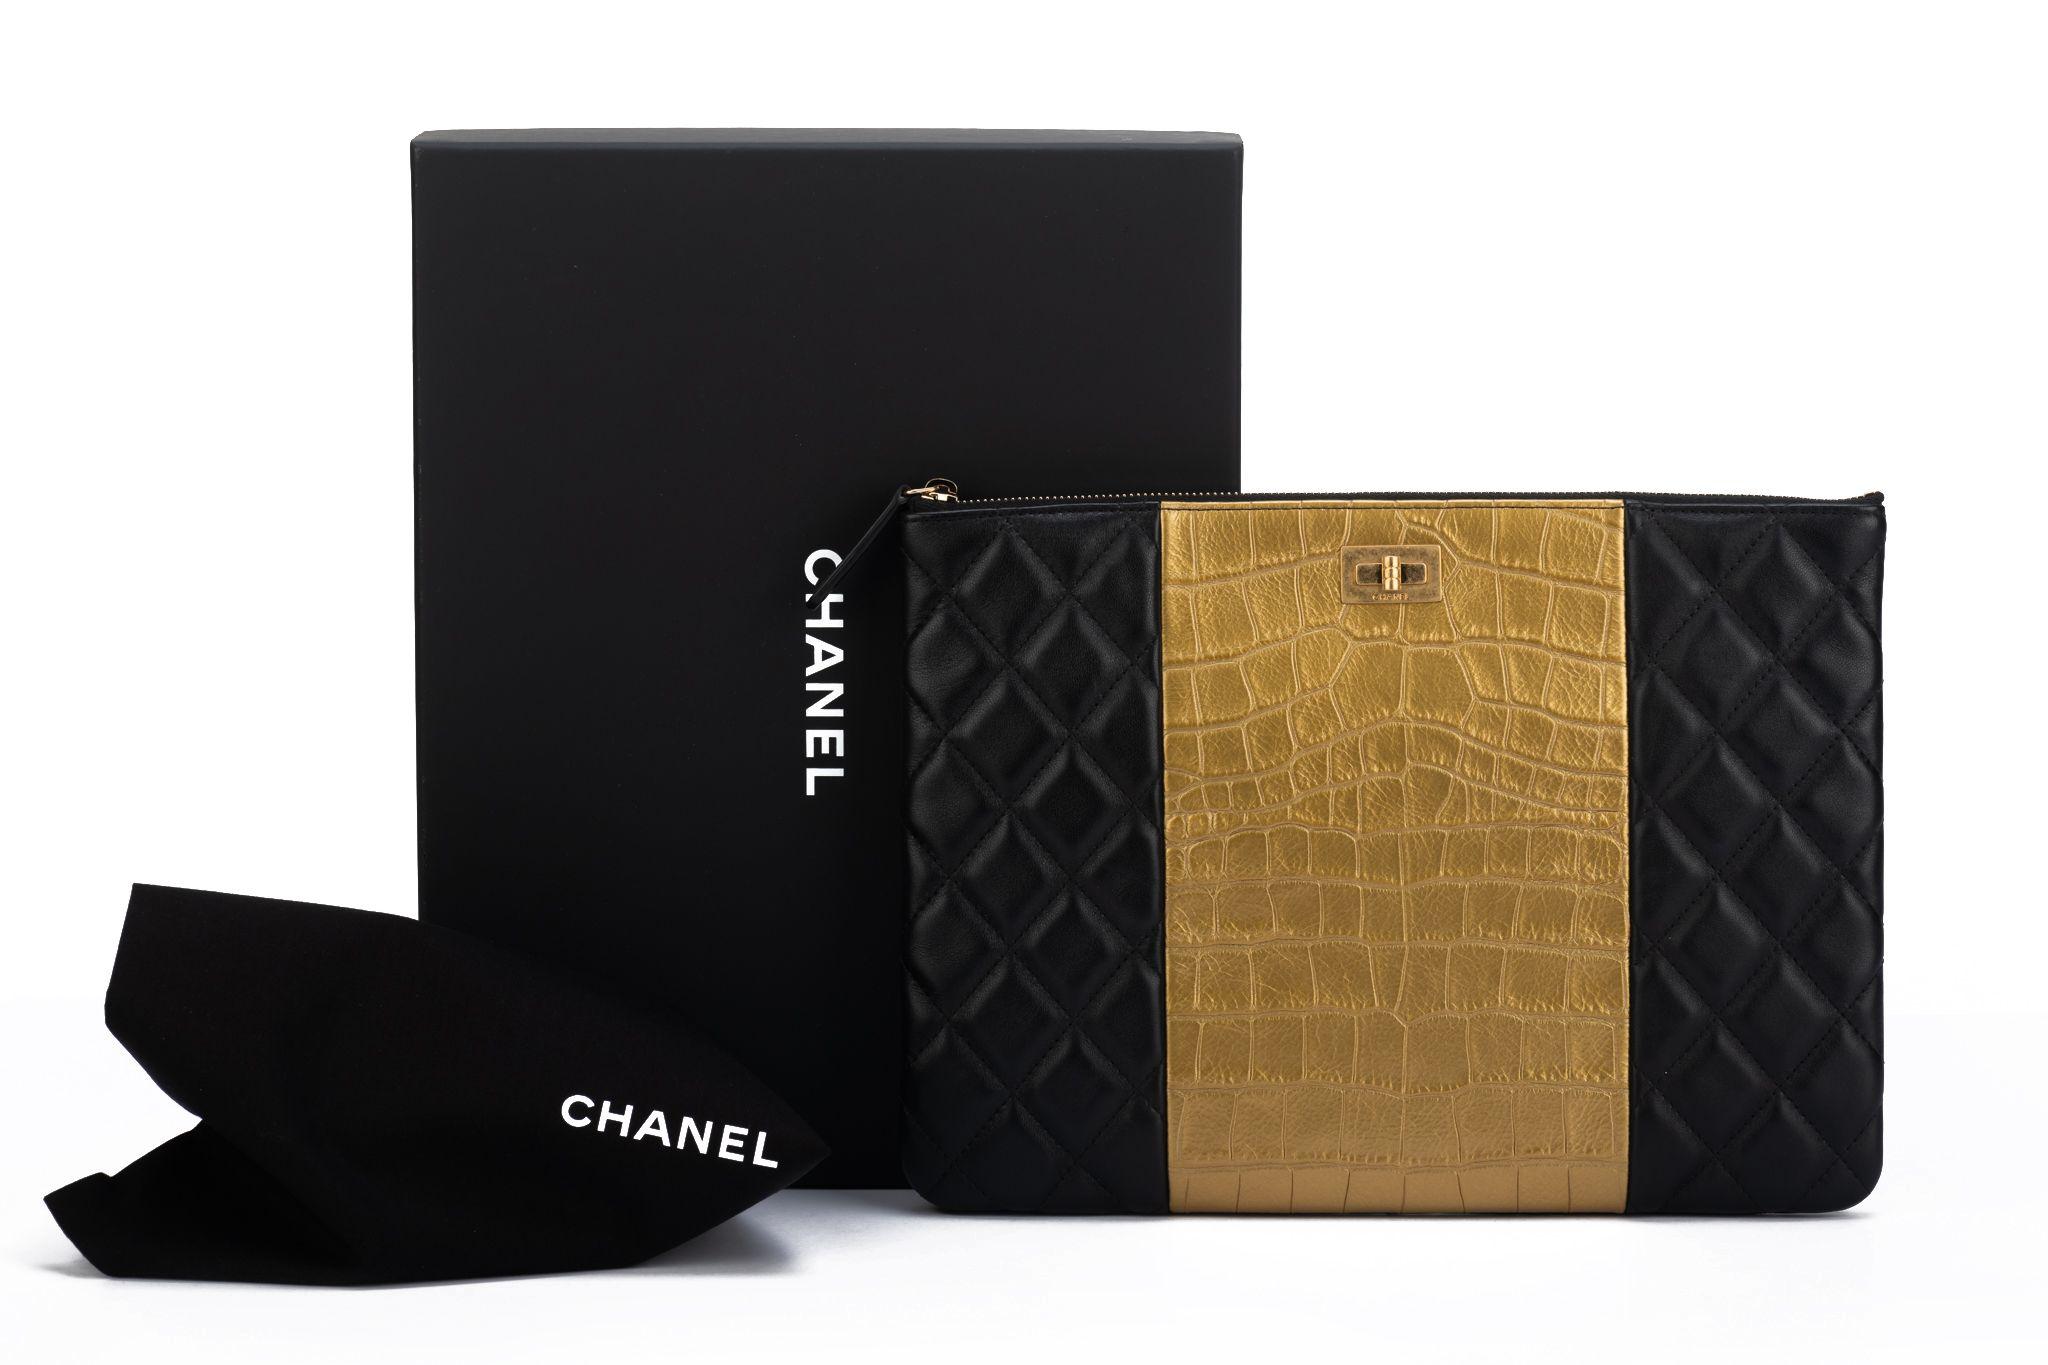 Chanel BNIB Black & Gold Croc Clutch For Sale 7